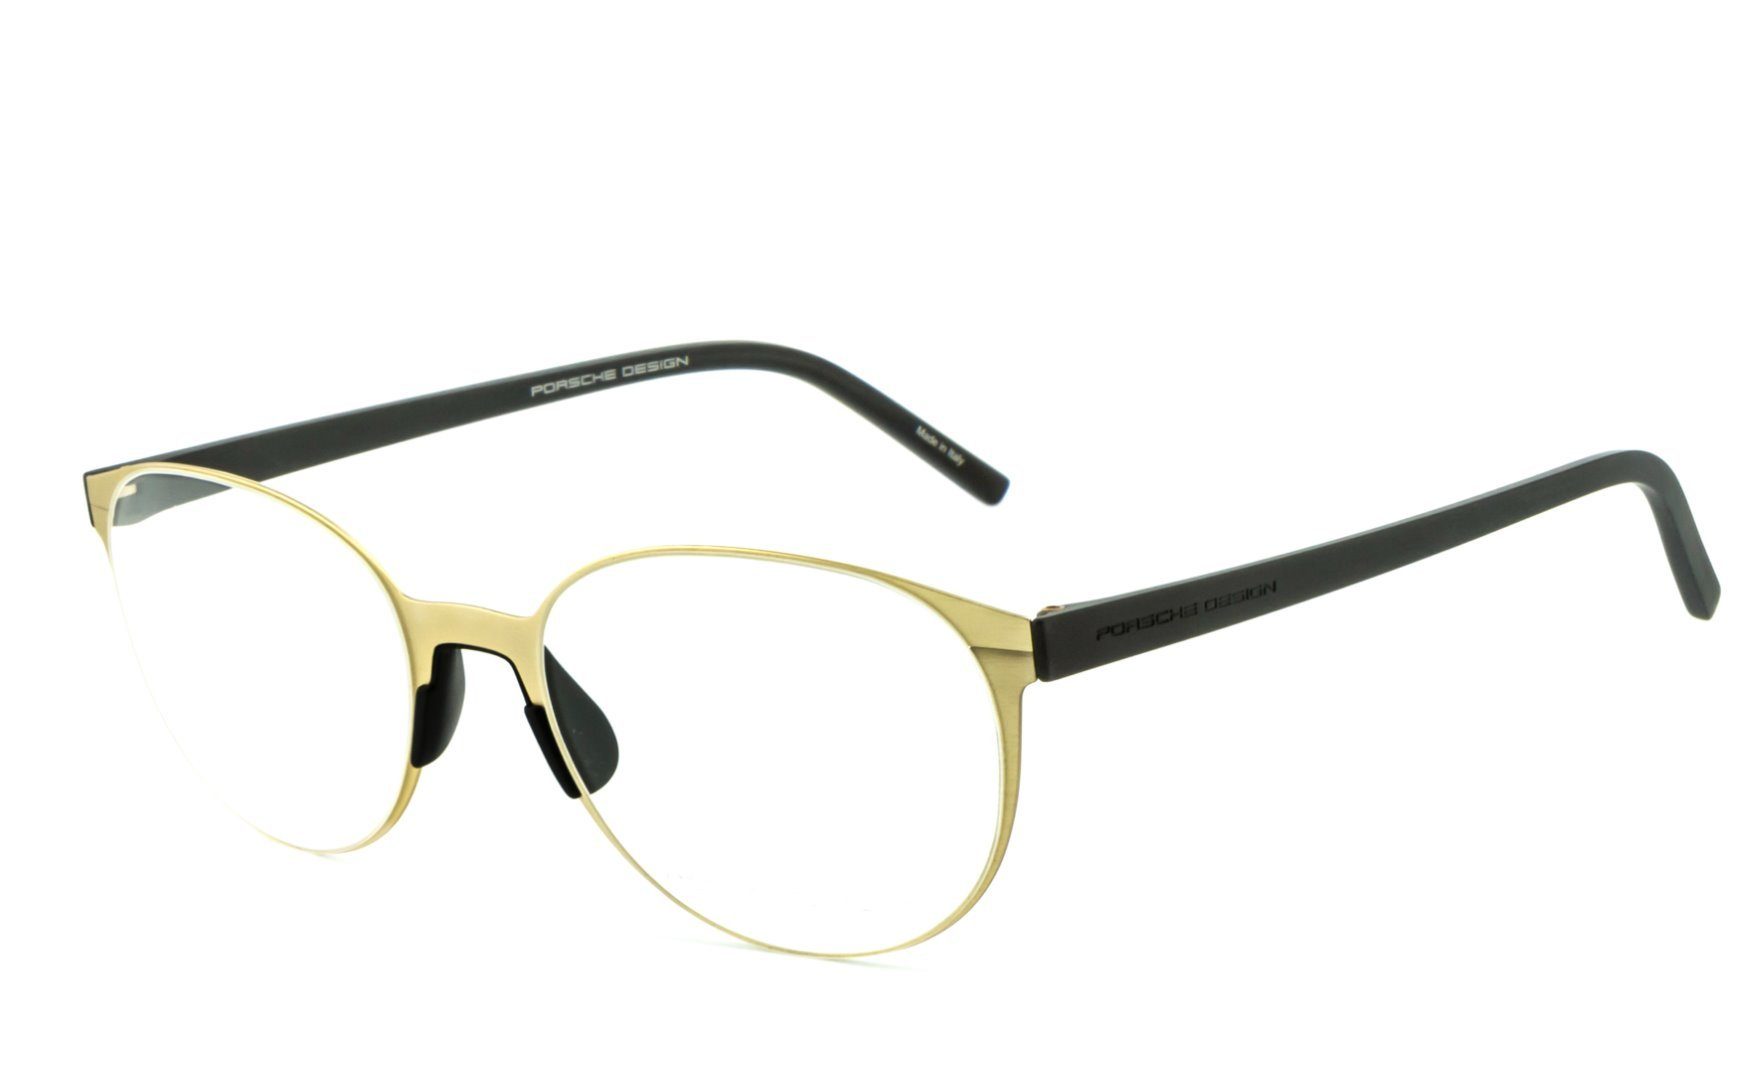 Gamingbrille, Blaulichtfilter Bildschirmbrille, Bürobrille, Design Brille, Brille, ohne PORSCHE Blaulicht Brille Sehstärke